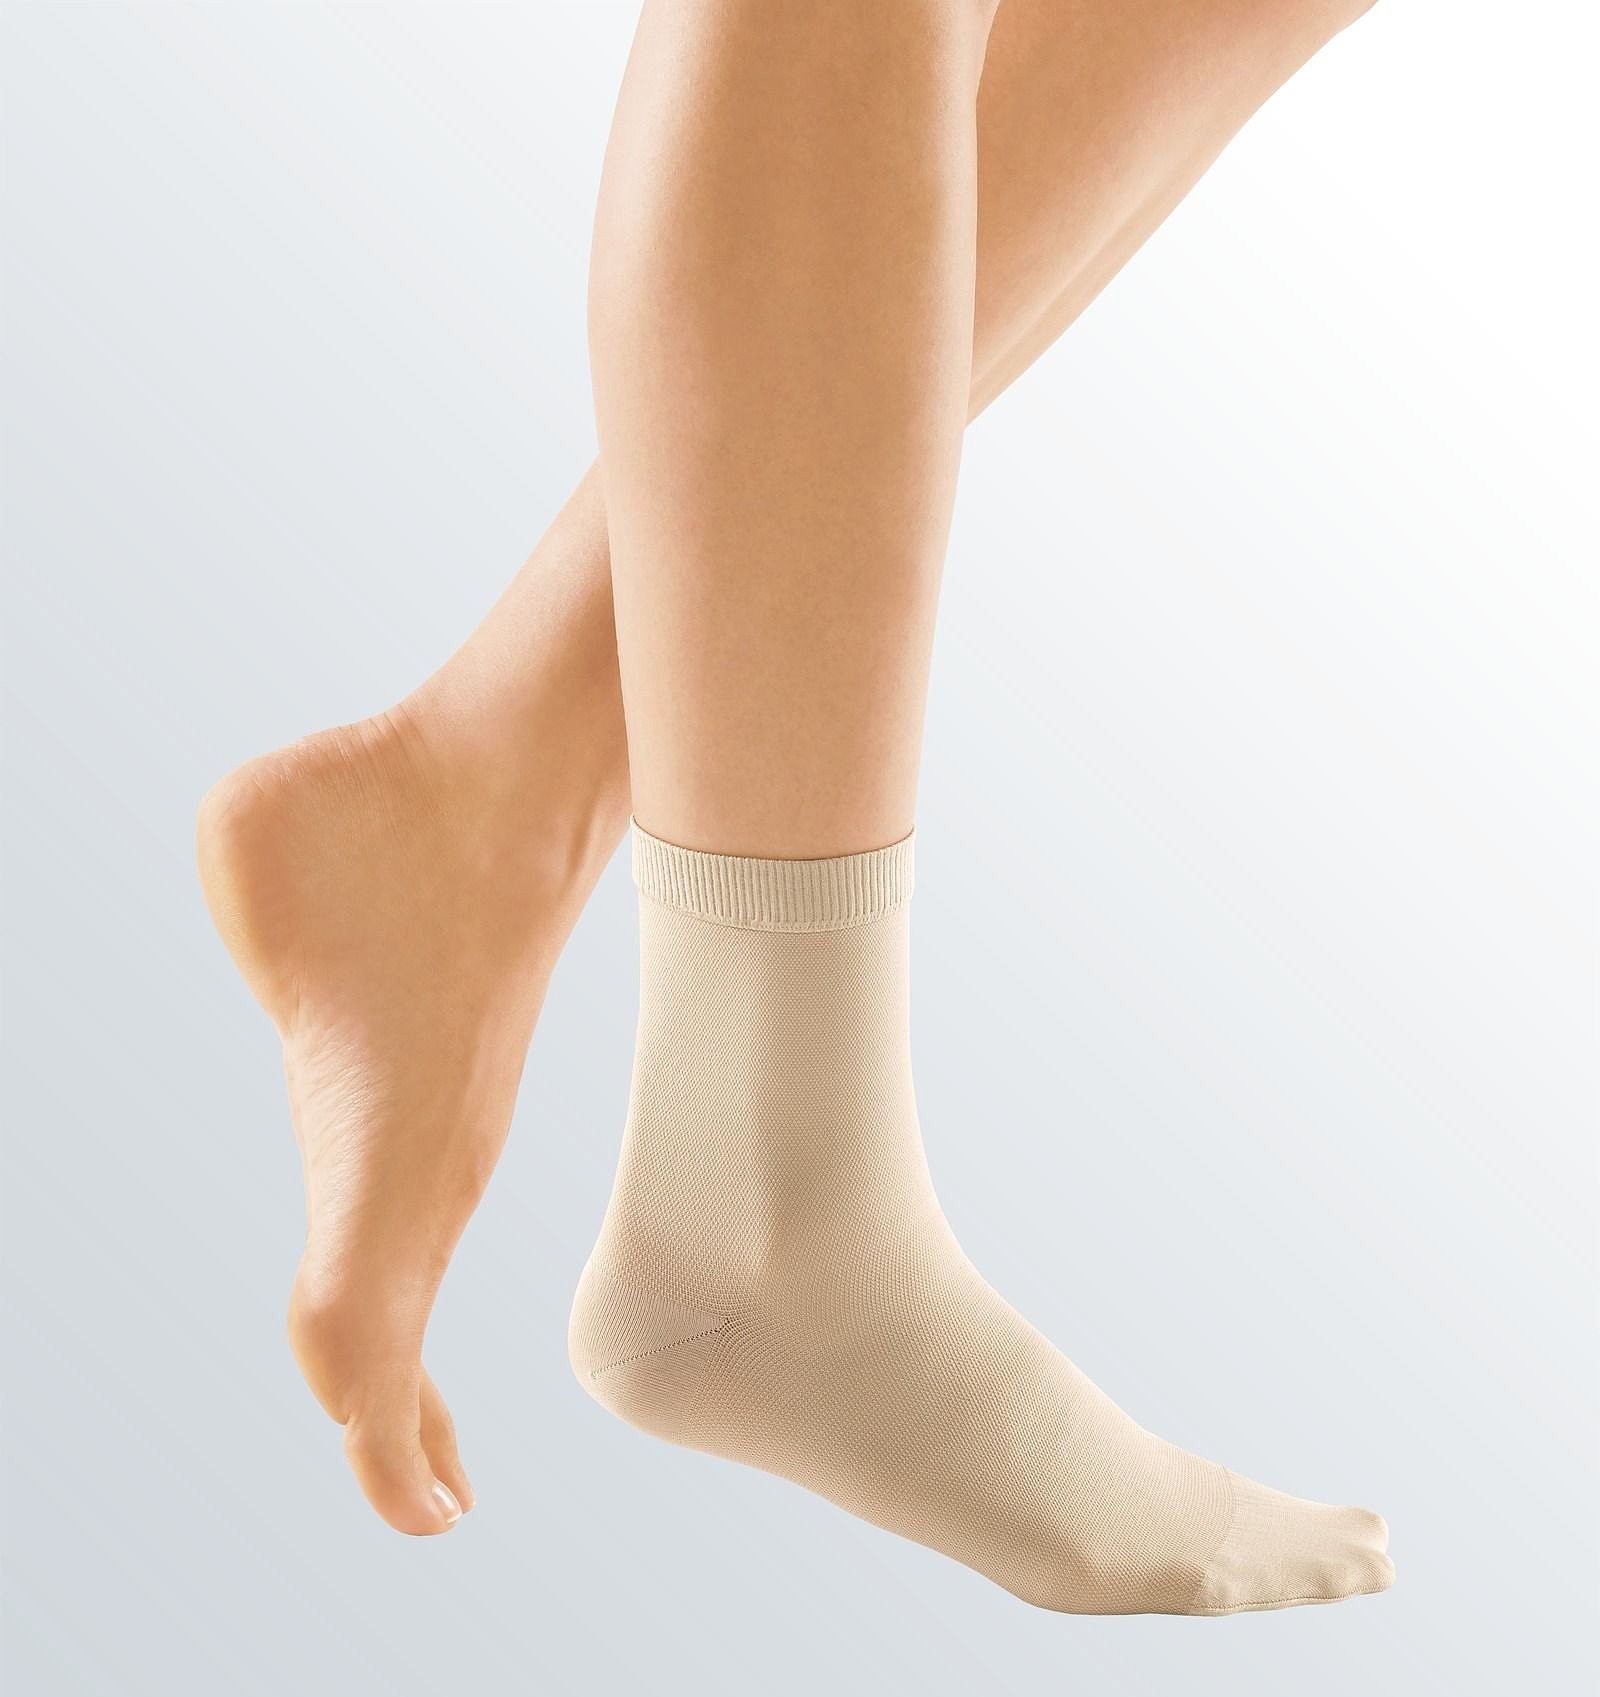 CircAid® Compression Socks & Wear